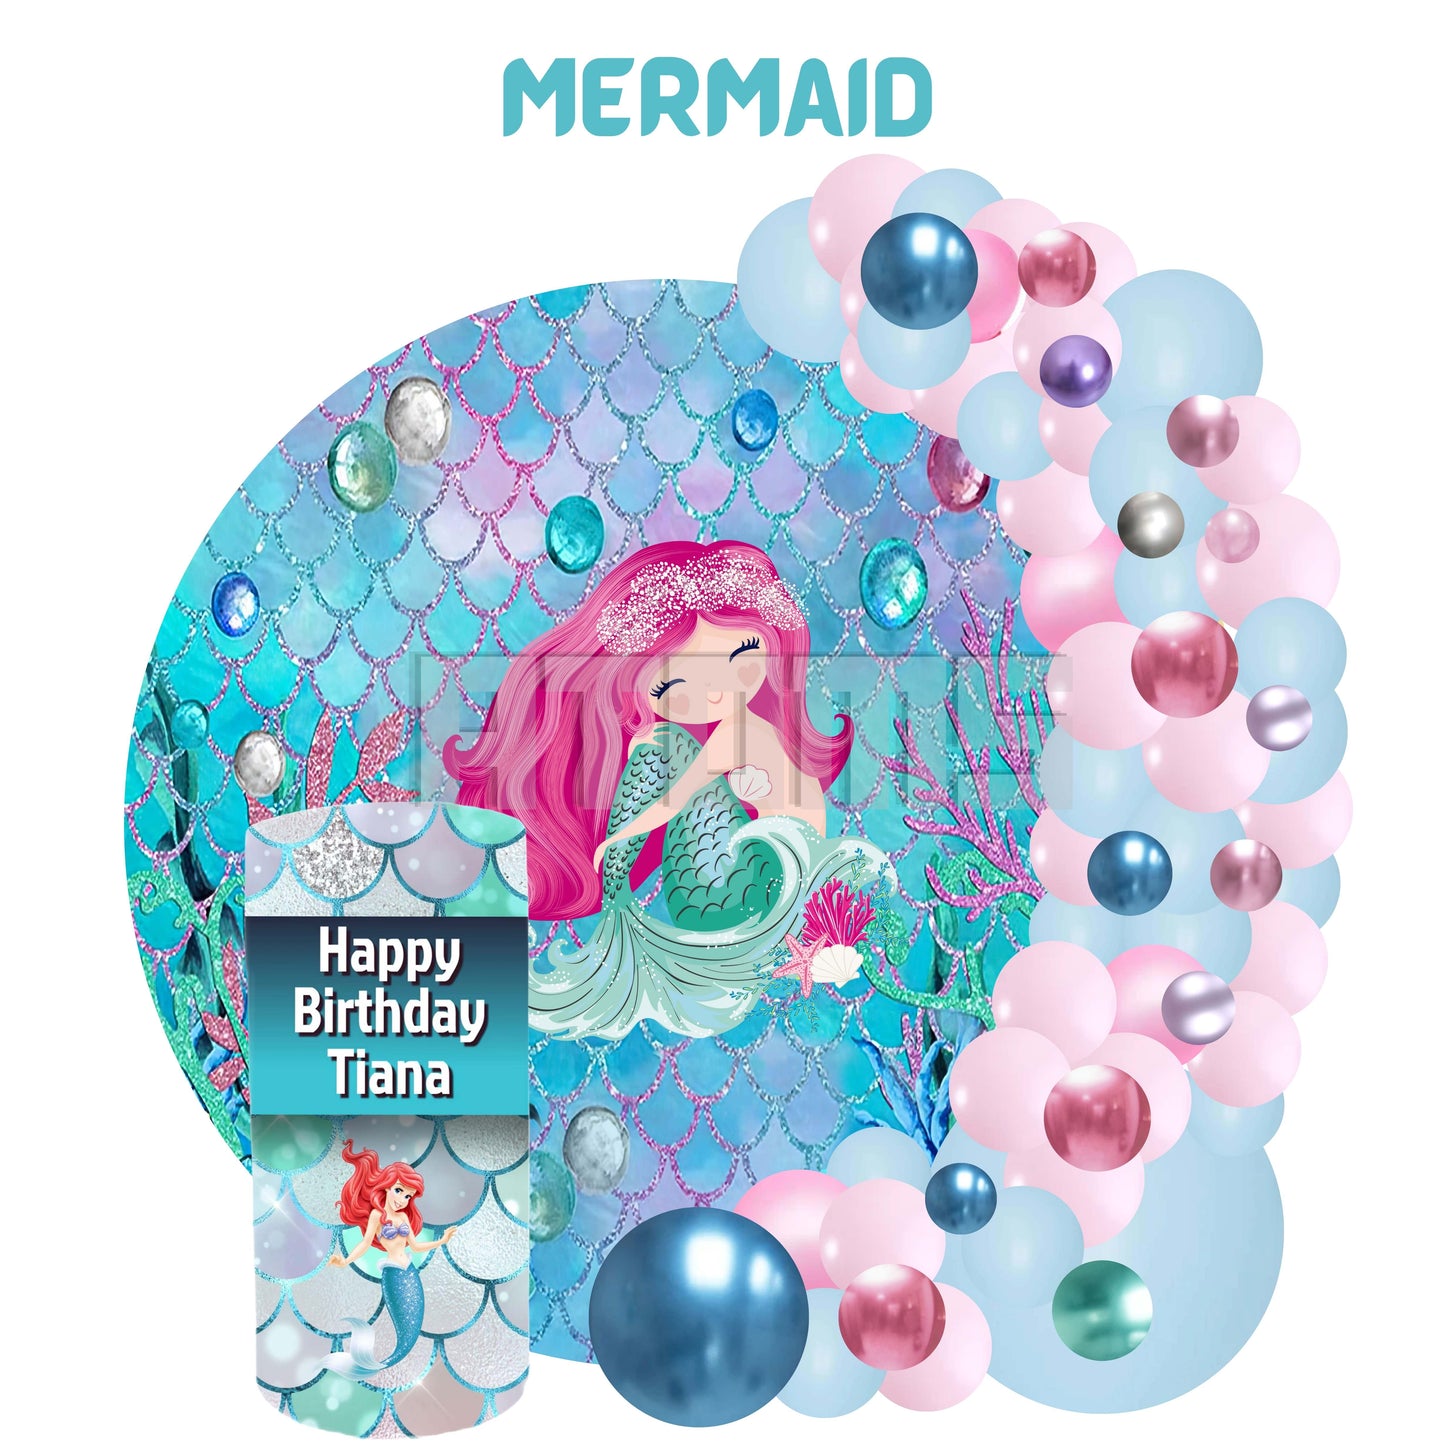 Mermaid Theme Setup